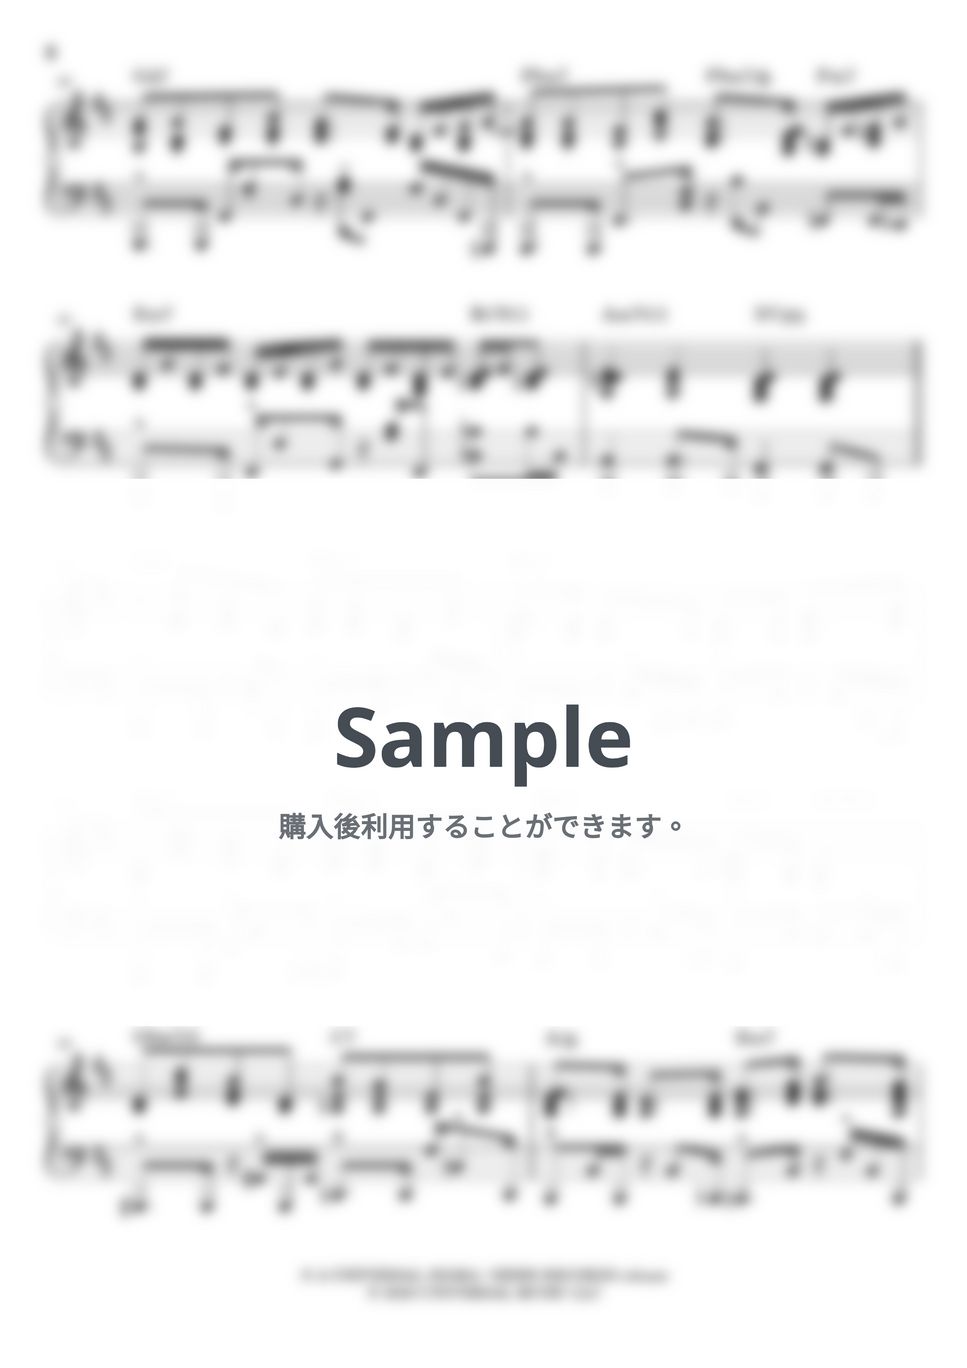 藤井 風 - 何なんw (Nan-Nan by Fujii Kaze) by BambooOnFire's Music Lab